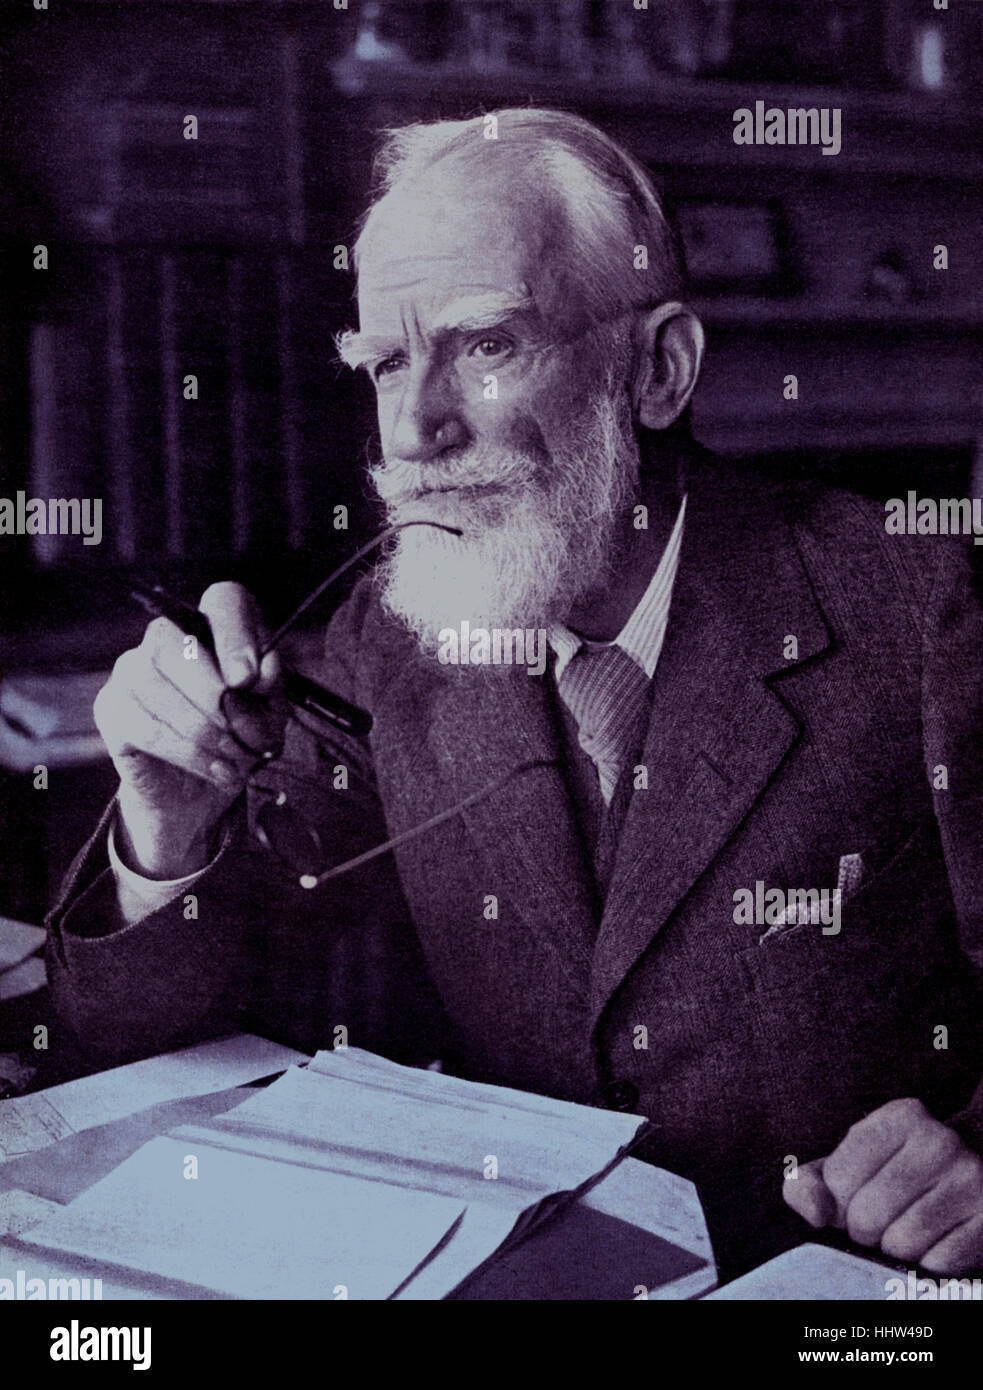 George Bernard Shaw - retrato del dramaturgo irlandés, crítico y ganador del Premio Nobel en su escritorio. El 26 de julio de 1856 - 2 de noviembre Foto de stock